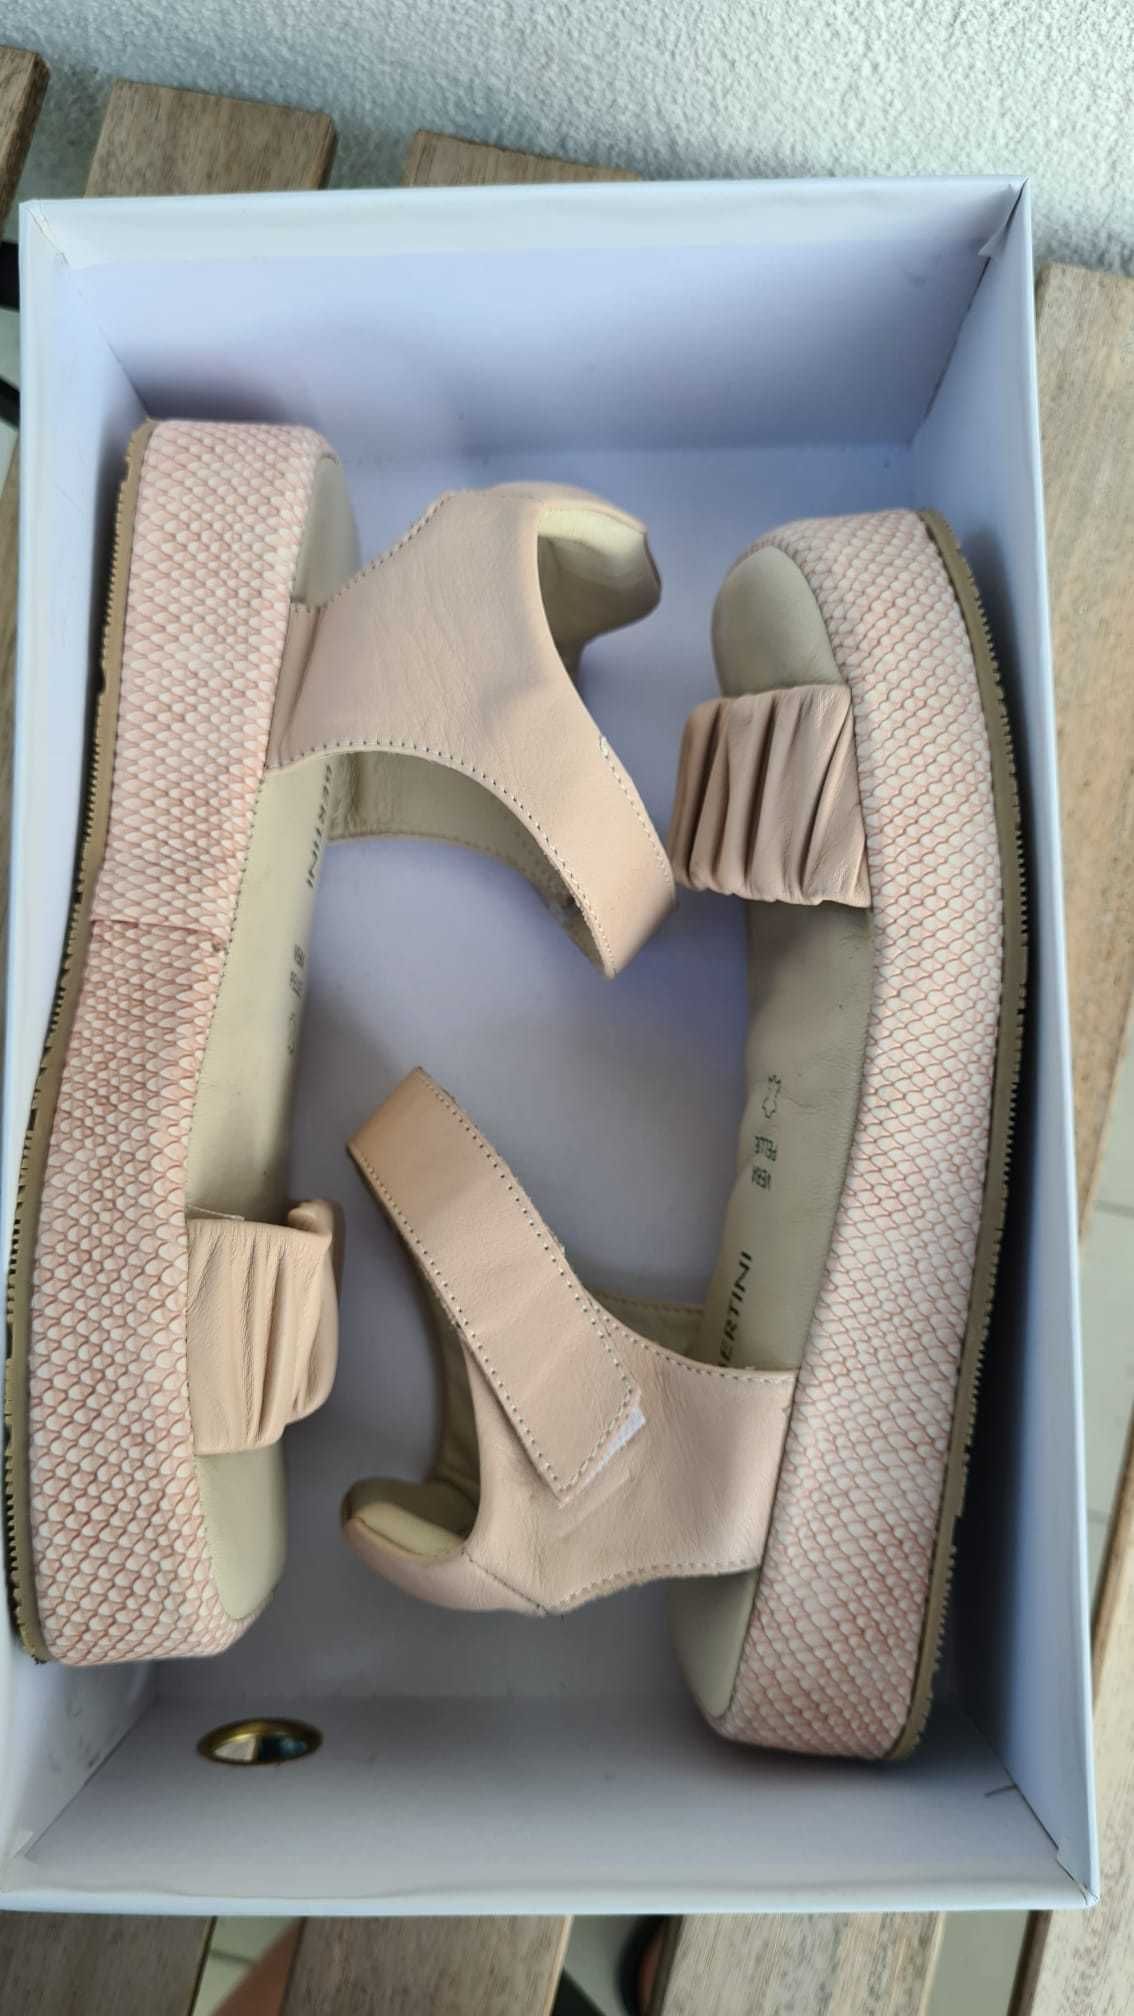 Sandale ENZO BERTINI, piele naturală, mărimea 37, roz pudrat/nude